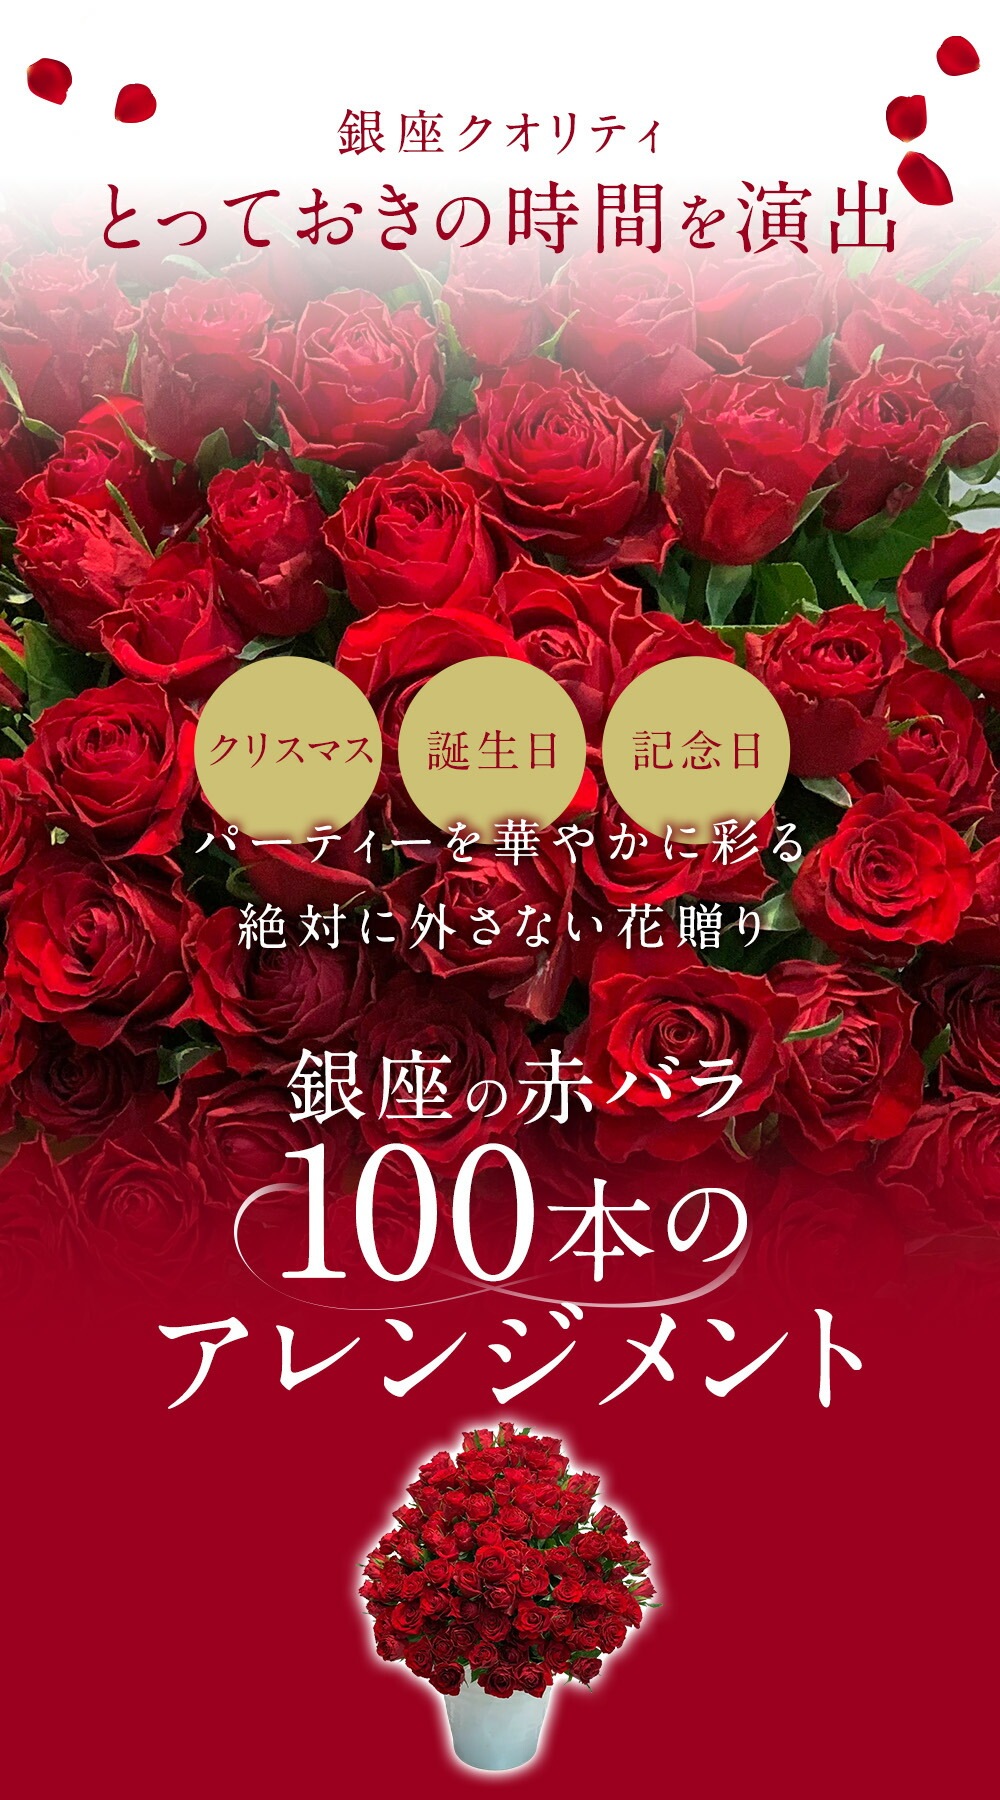 銀座の赤バラ アレンジメント 100本 薔薇 季節の花束 あす楽13時まで